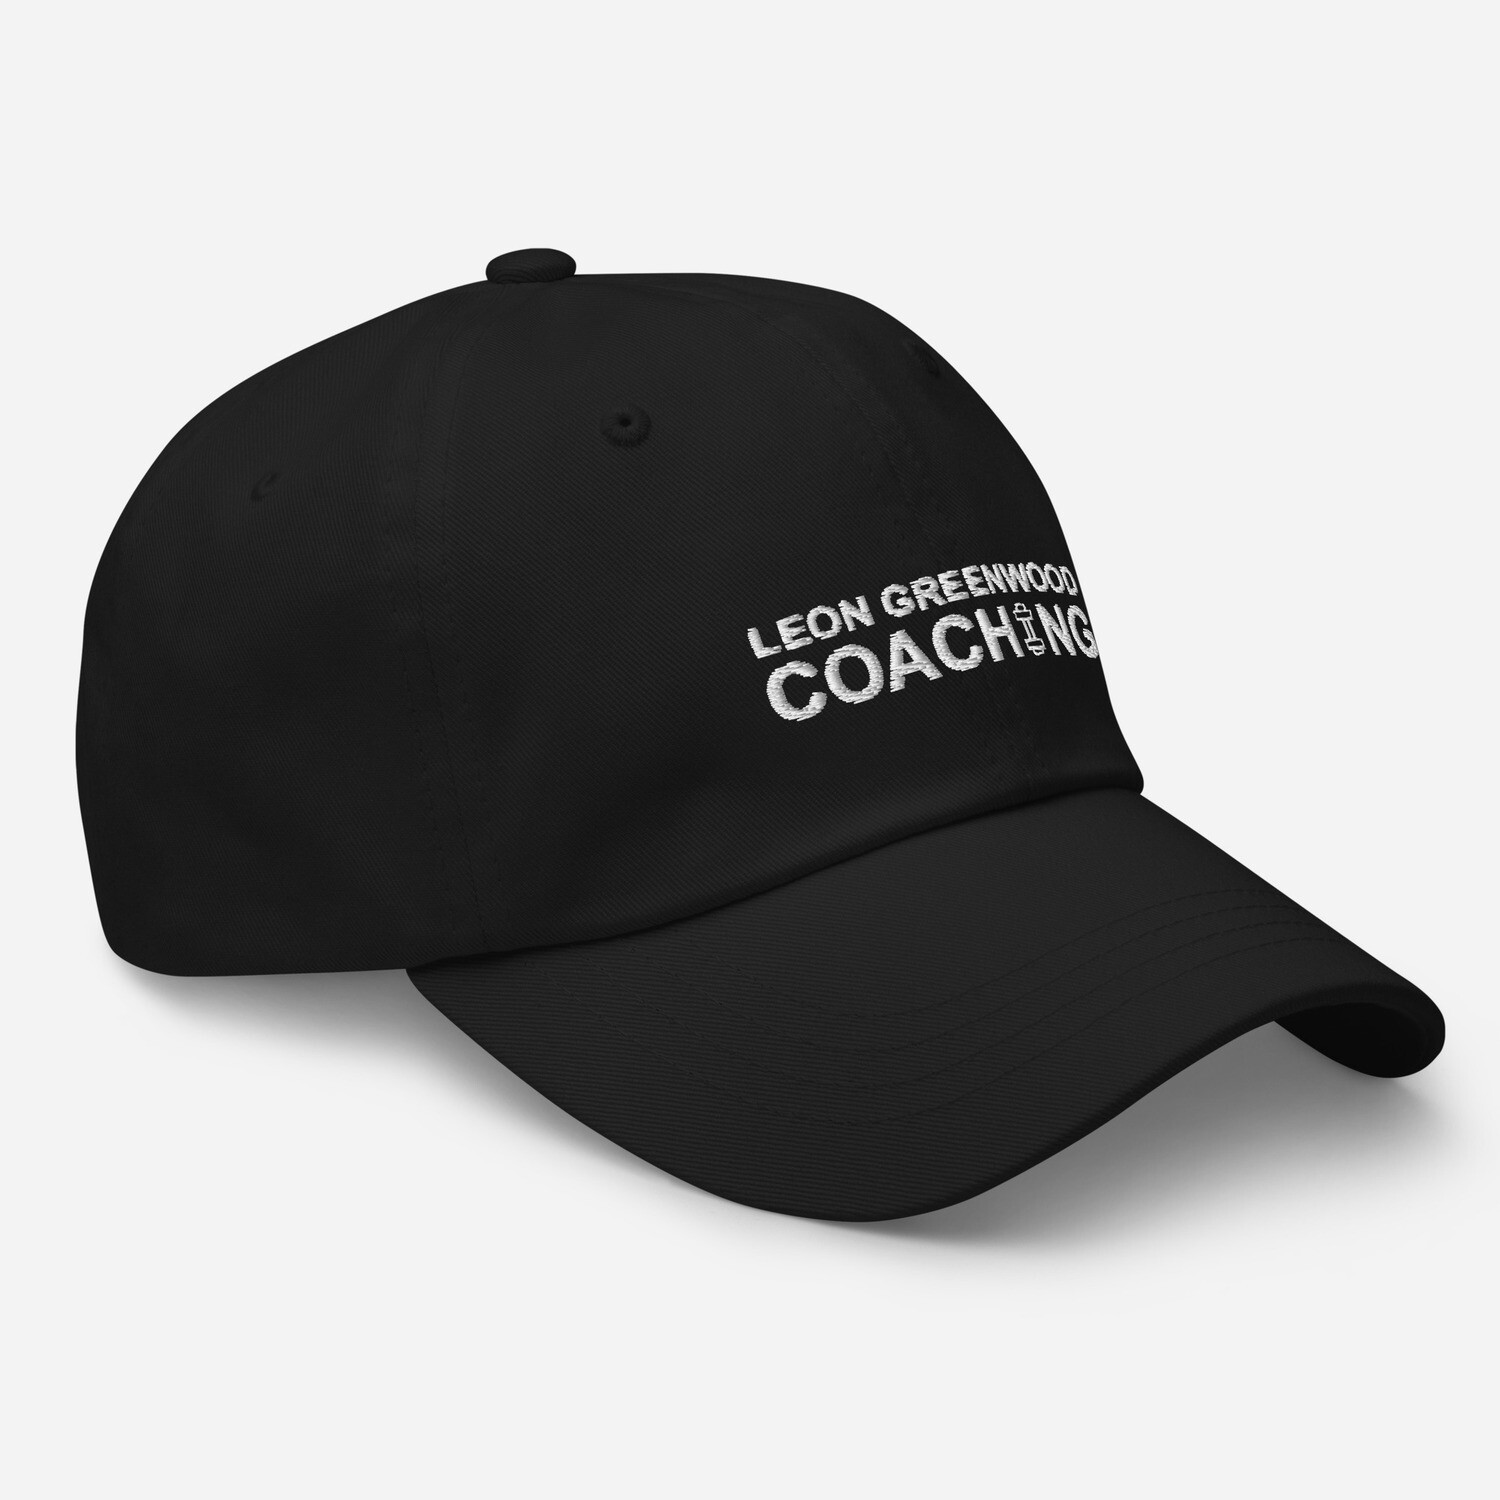 The LG Training Cap